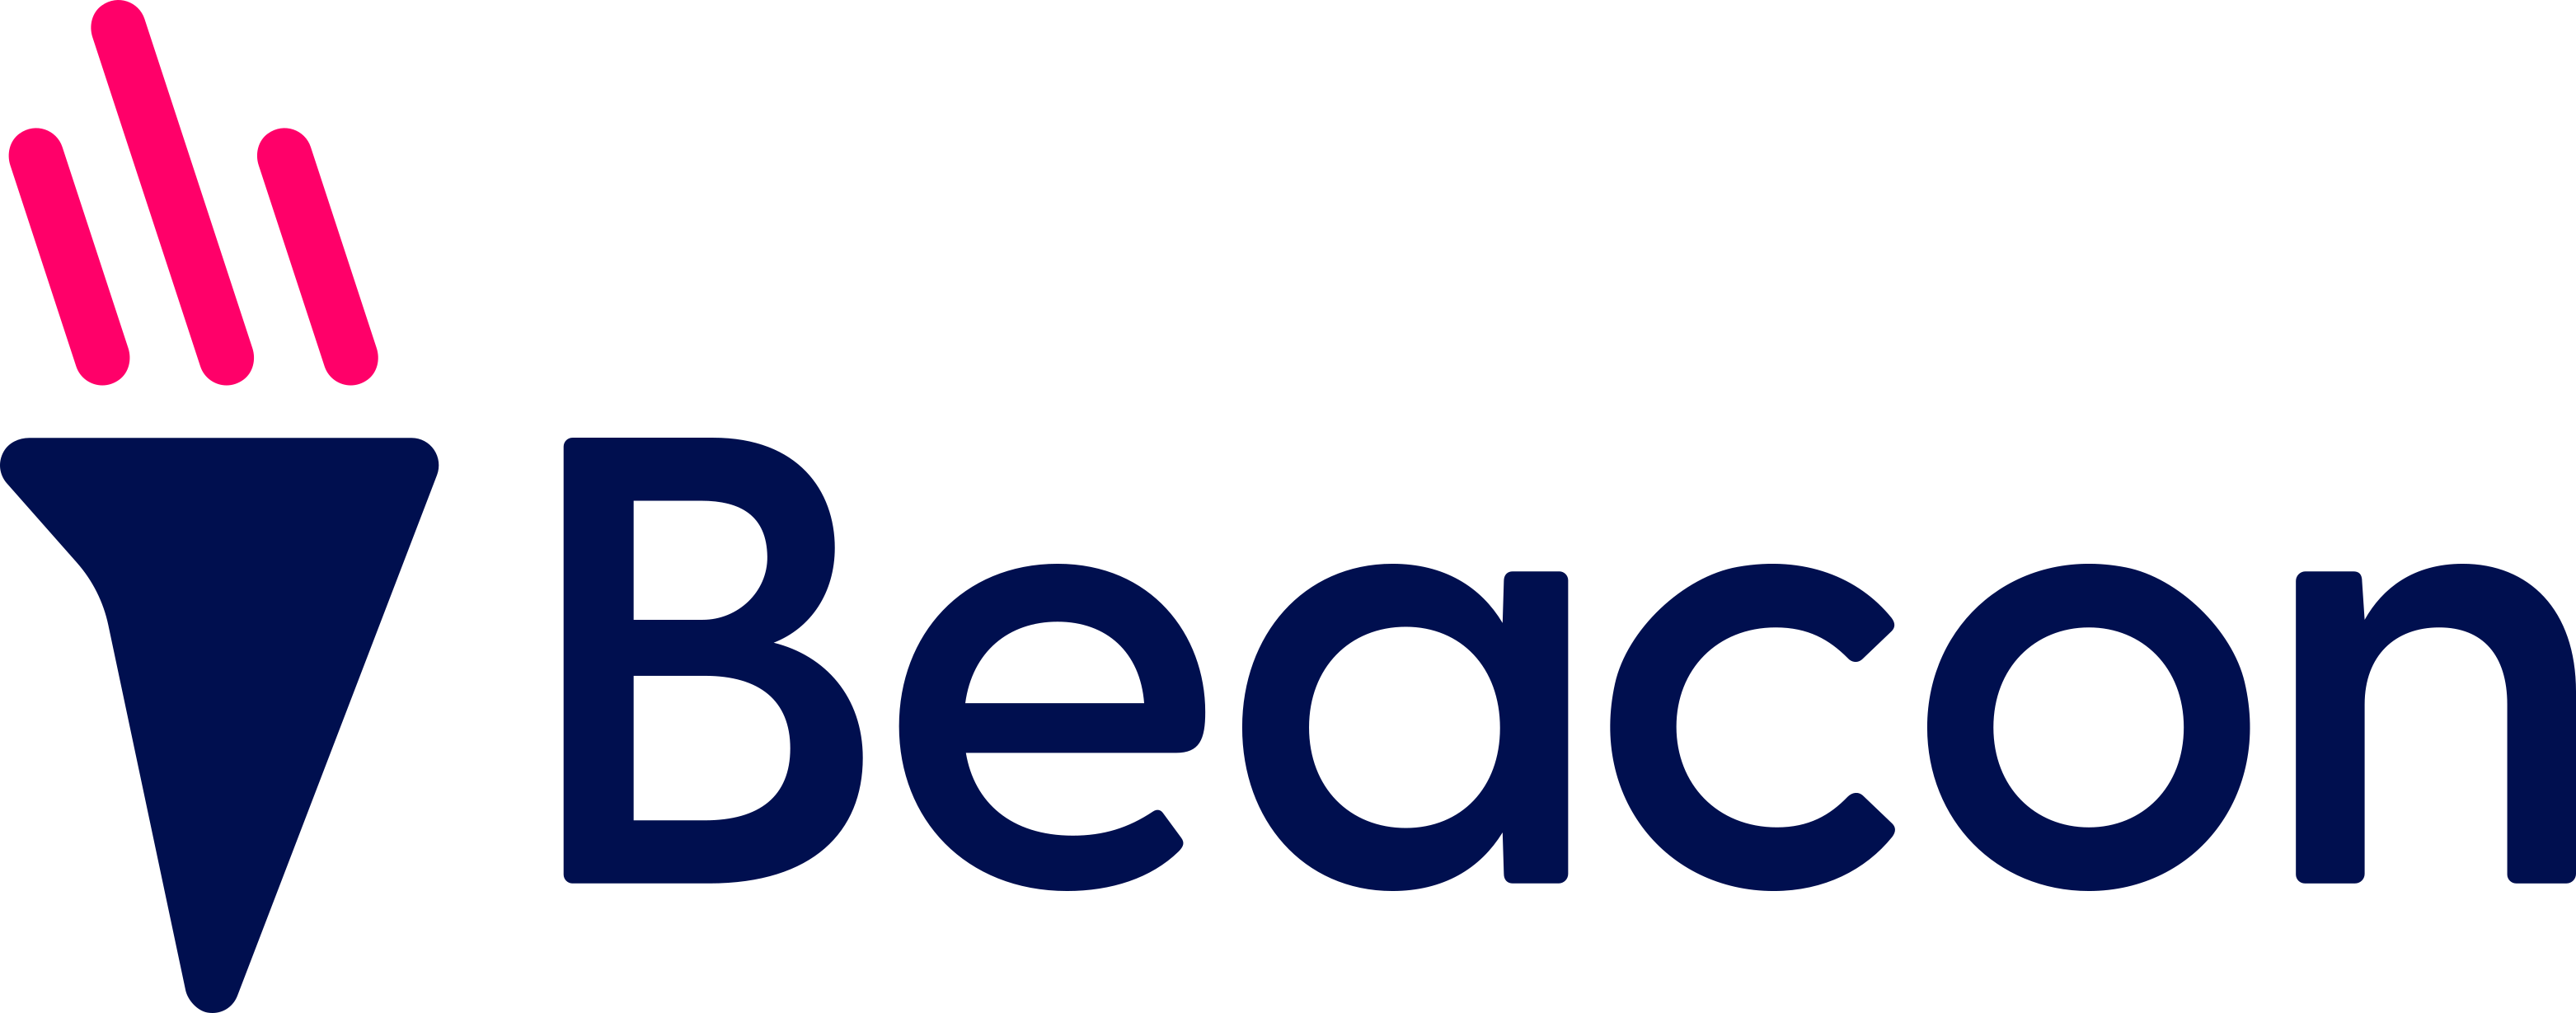 logo for Beacon CRM